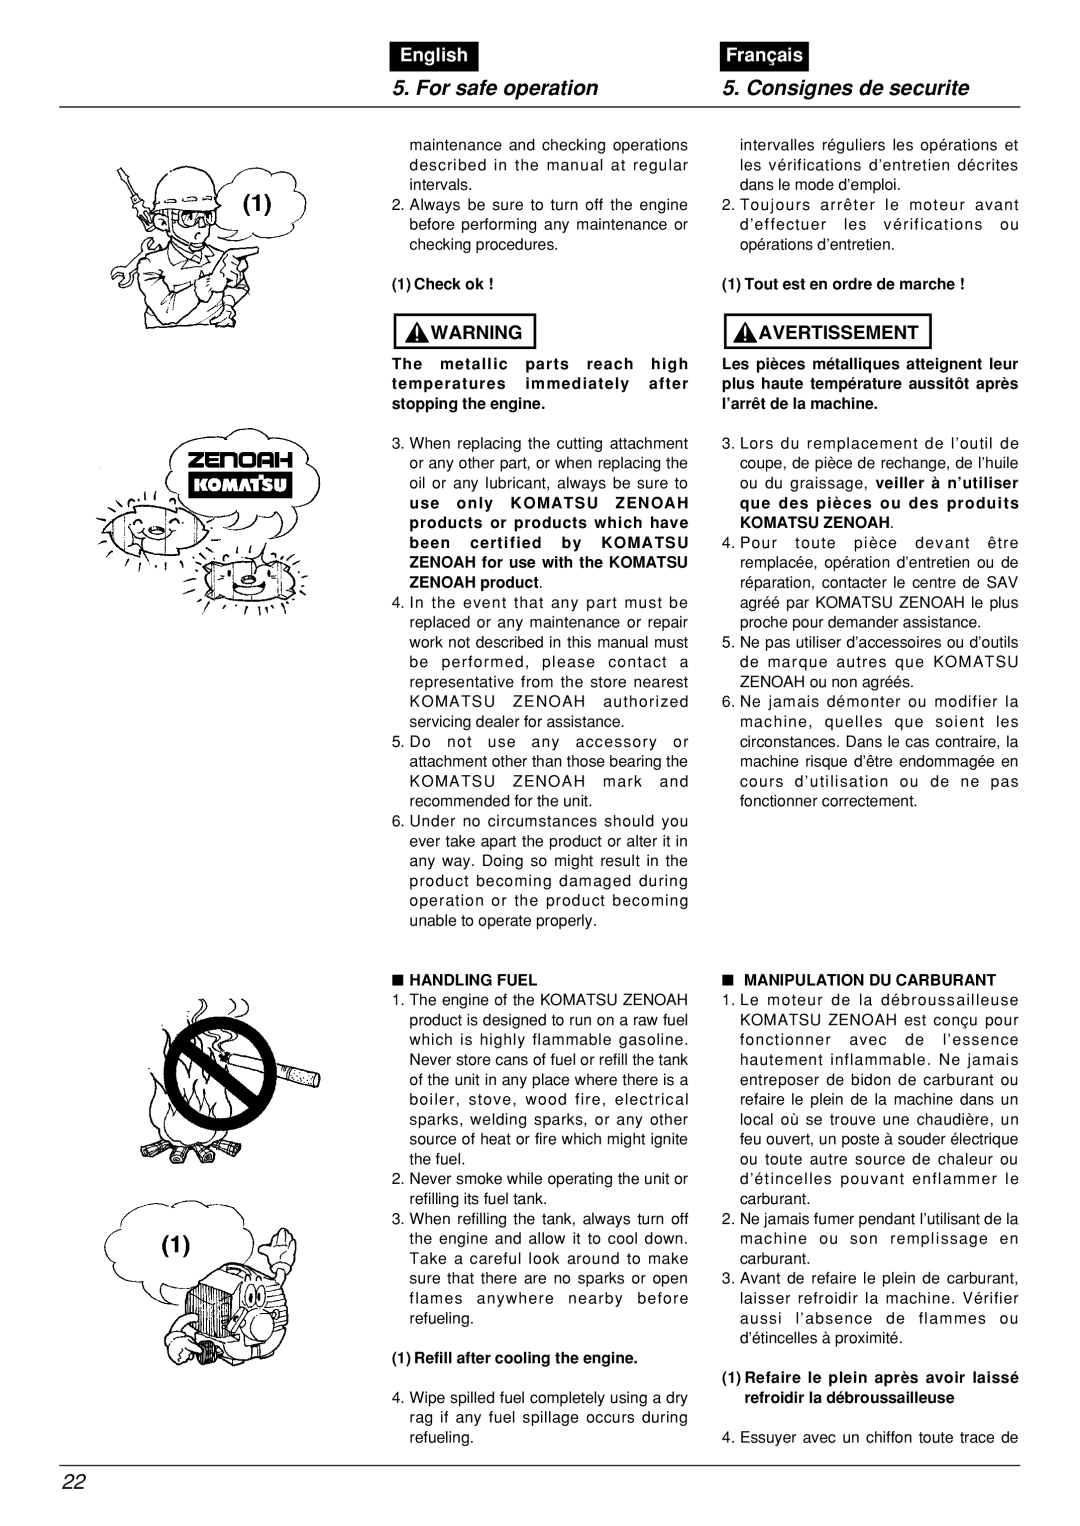 Zenoah BCX2601DL manual For safe operation, Consignes de securite, English, Français, Check ok 